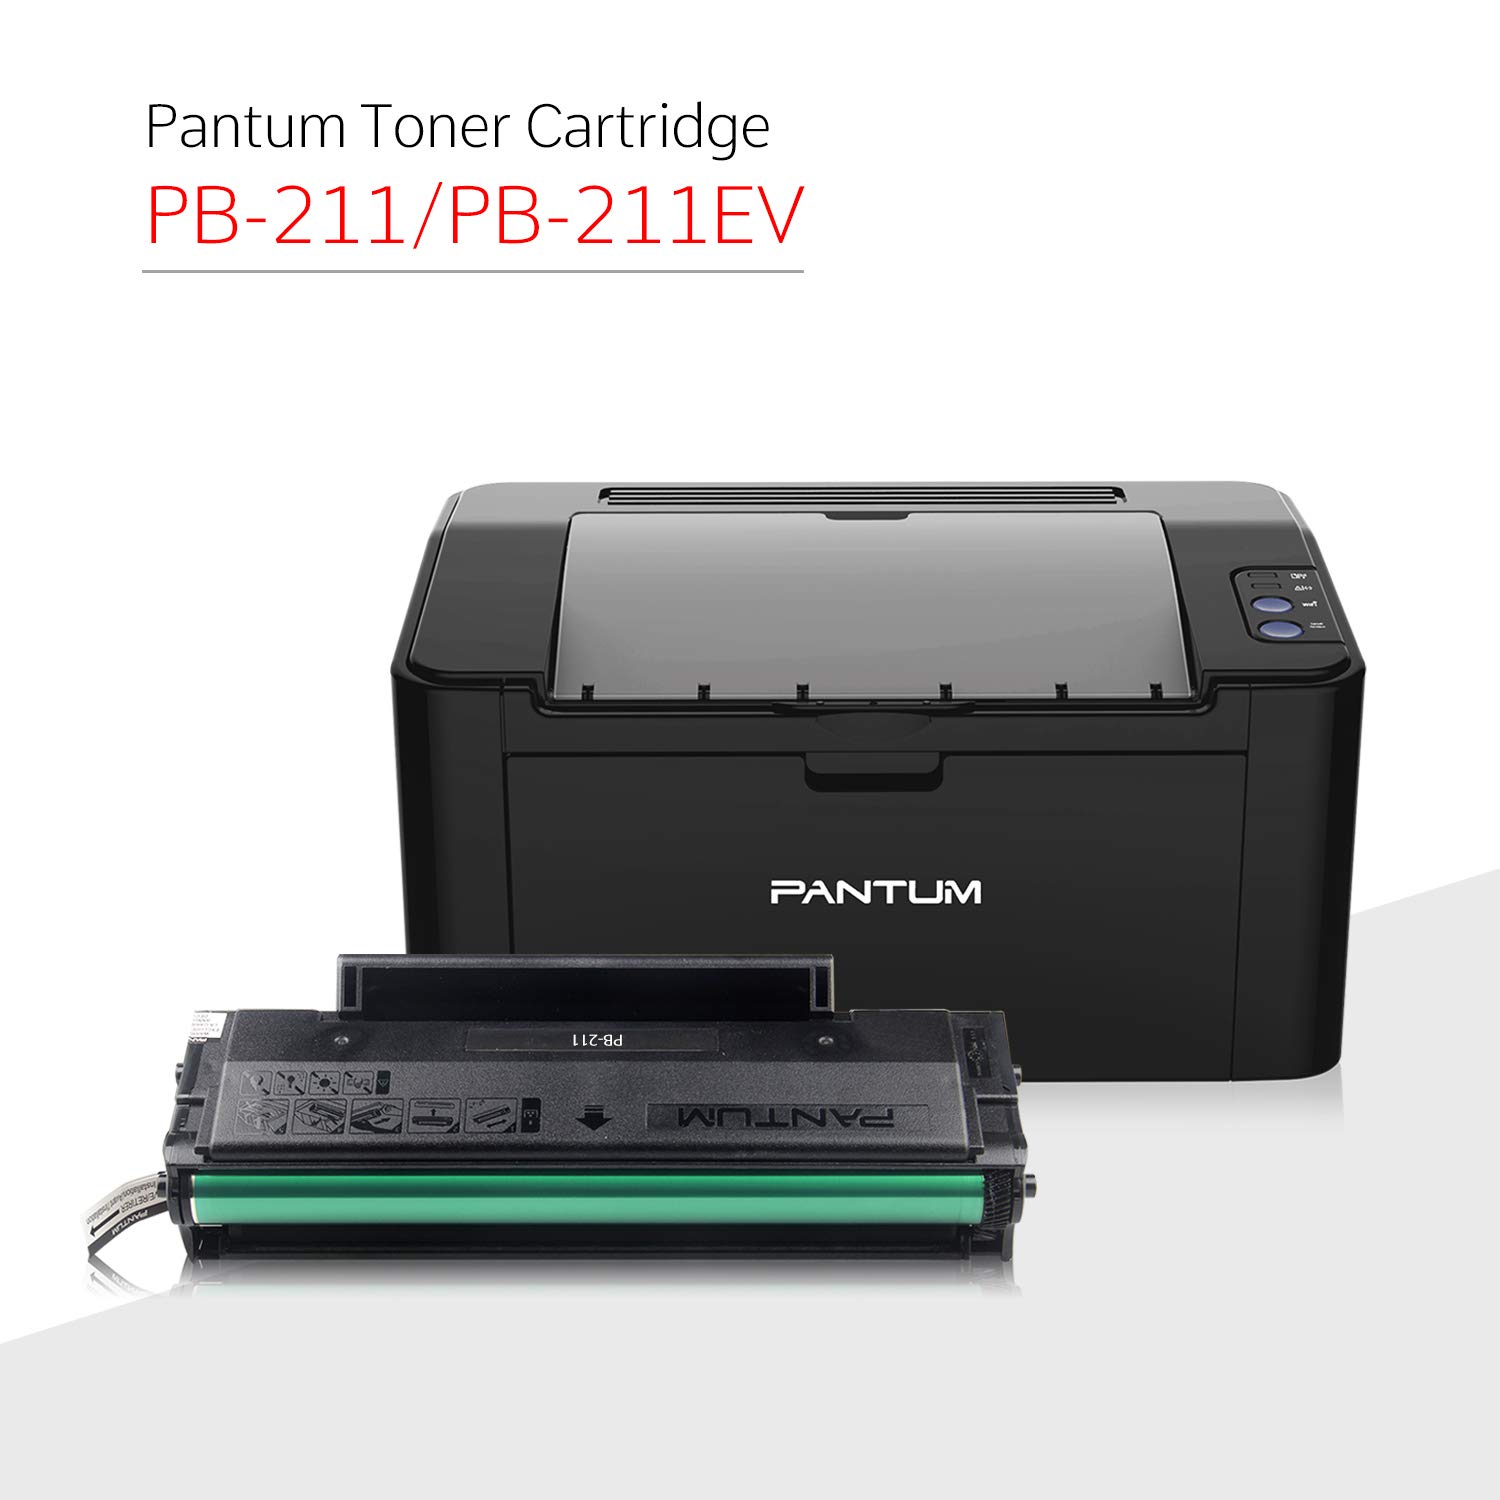 download pantum p2500w printer driver